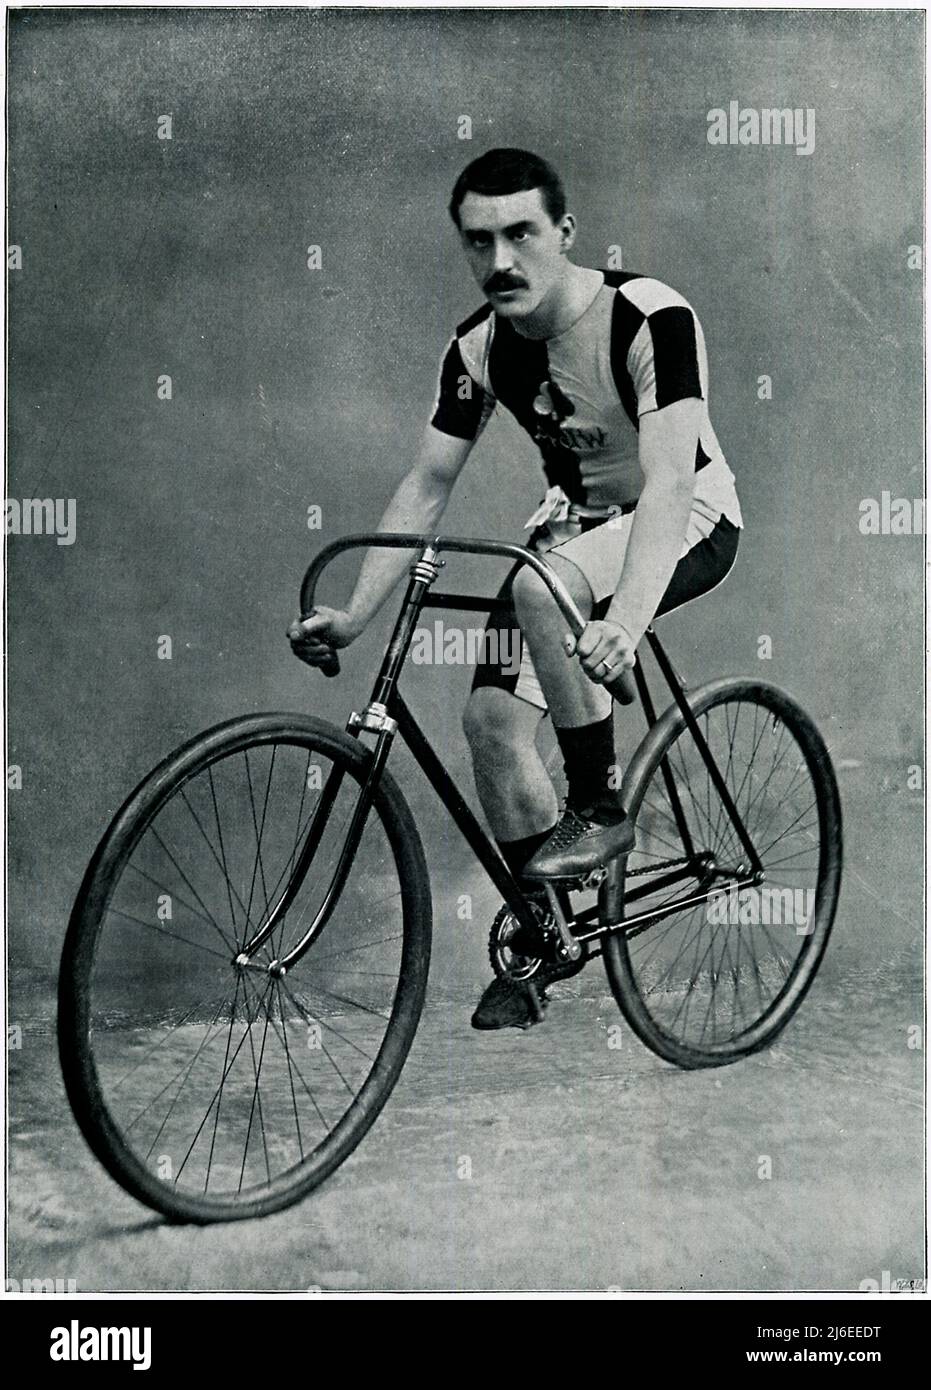 AJ Watson, retrato de 1895 del ciclista inglés aficionado a las carreras, campeón en una y cinco millas en la pista en 1895 Foto de stock